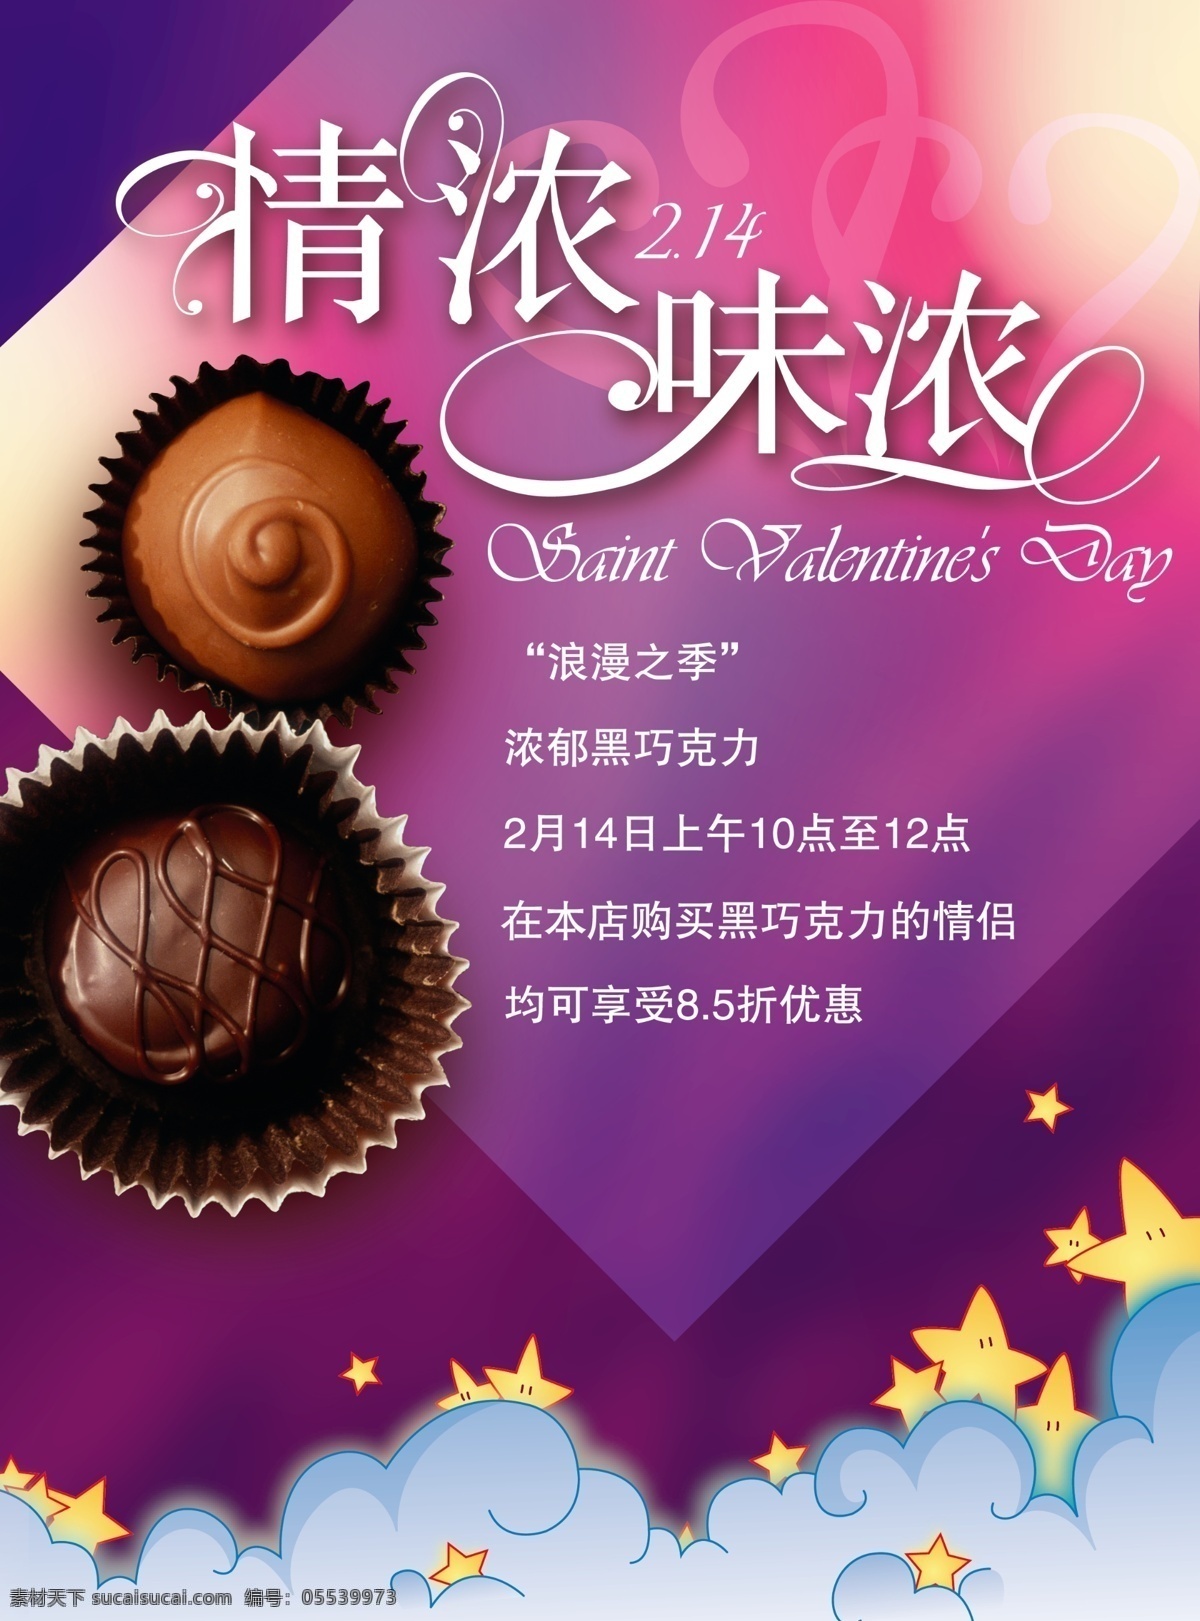 情人节 巧克力 2.14 黑 浪漫 季 海报 设计图 广告 模板 展板 广告模板 广告展板设计 广告设计模板 psd素材 紫色